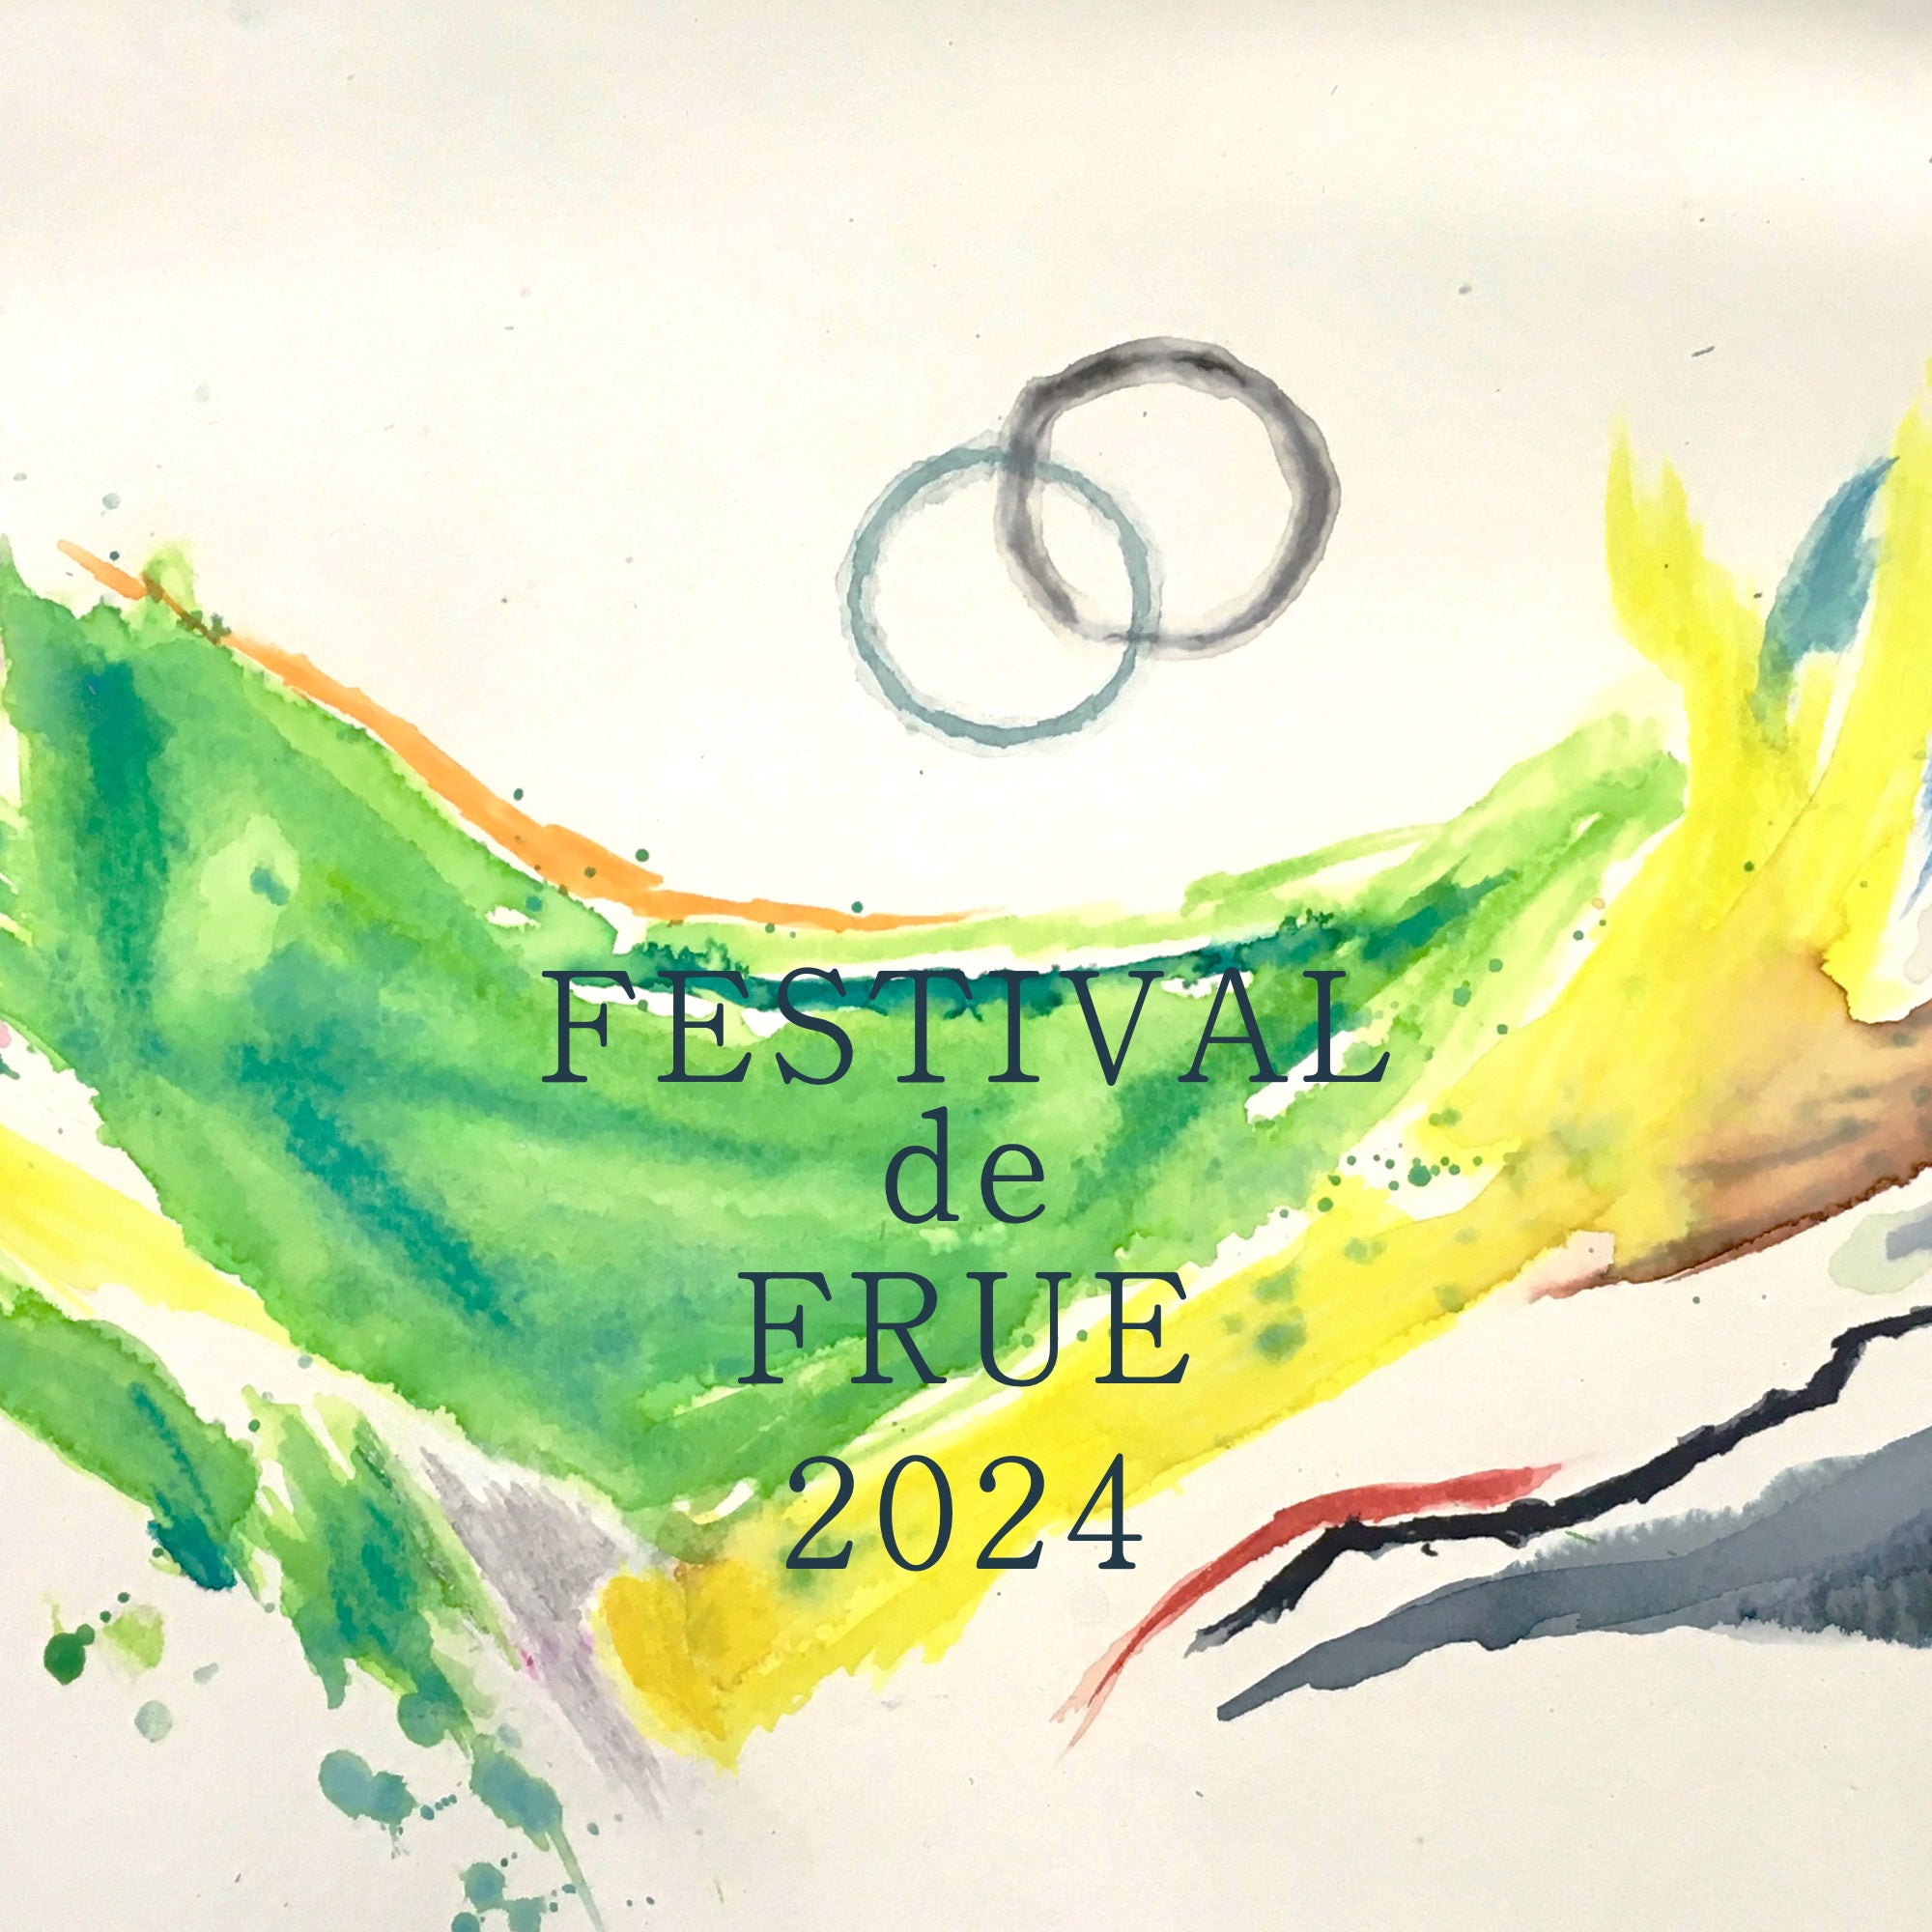 FESTIVAL de FRUE 2024 2日通し券 – FRUE SHOP